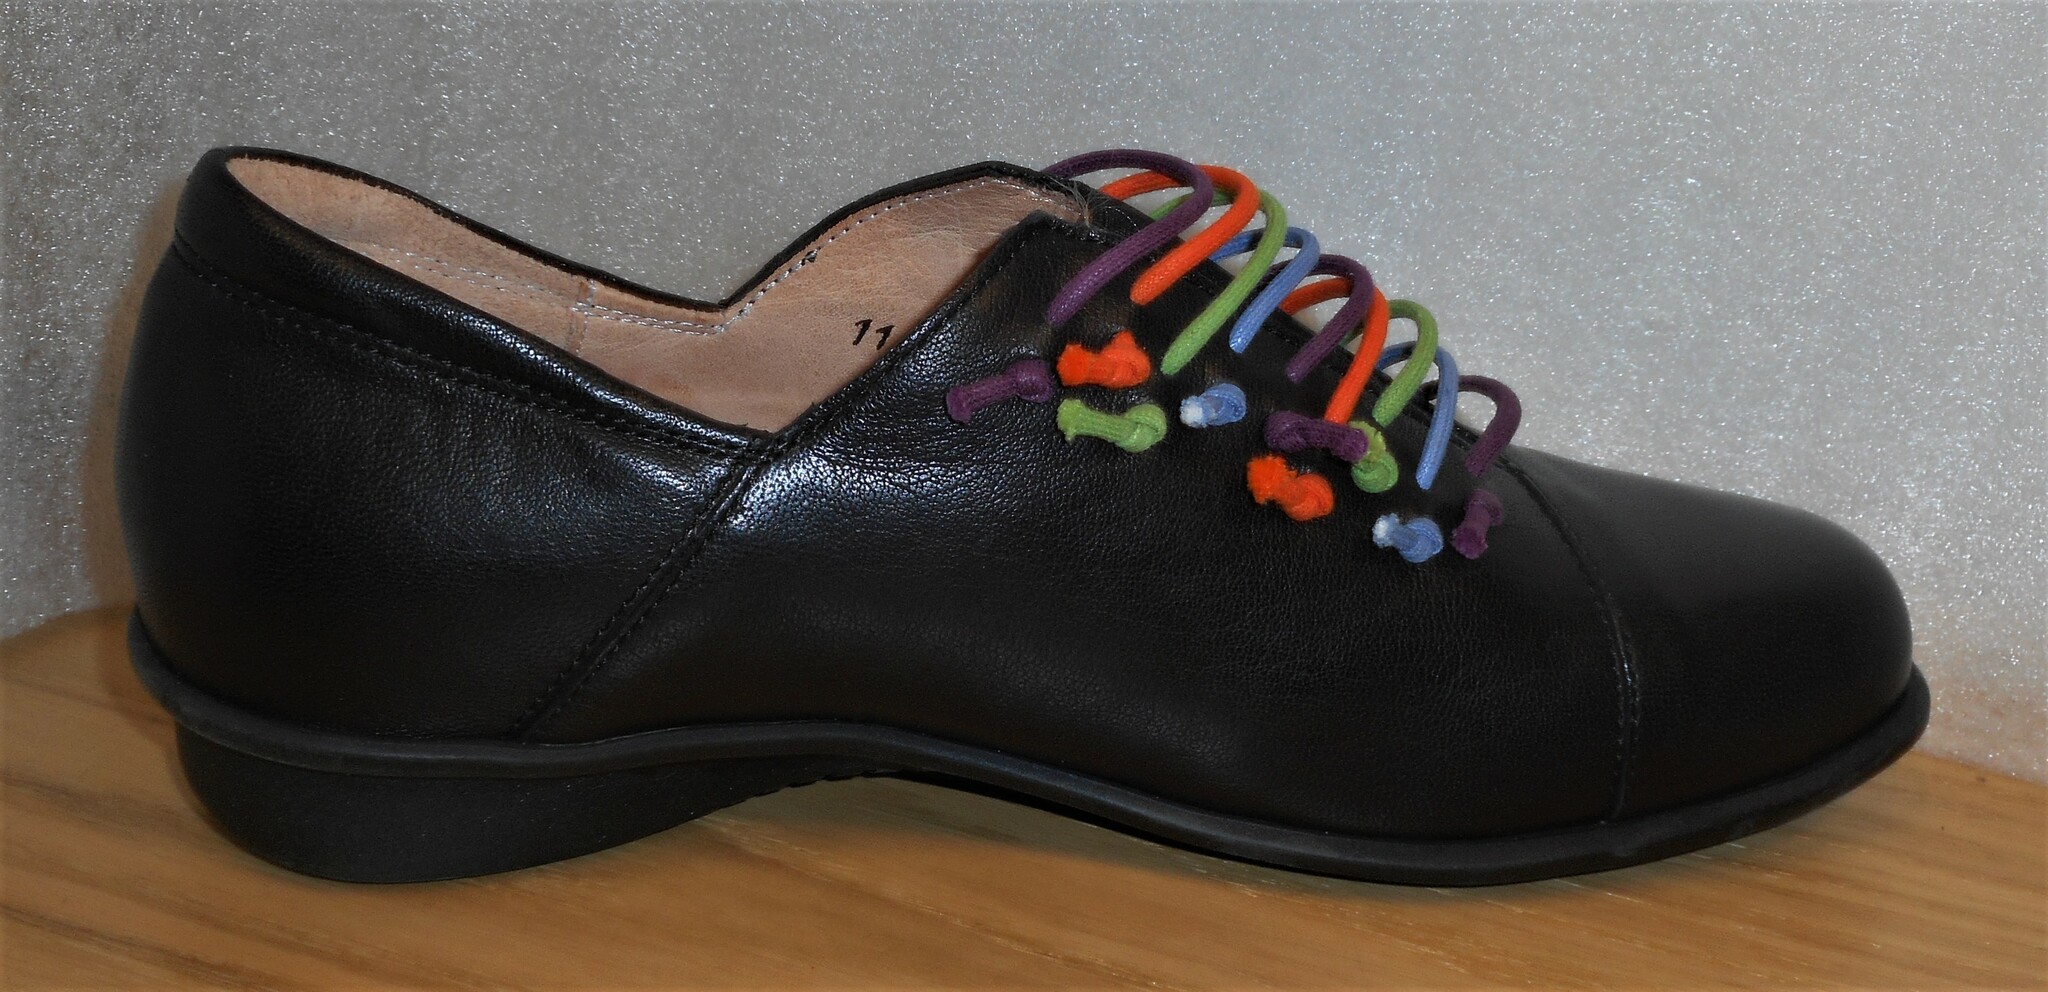 Svart loafer med  multifärgade gummiband - Think!